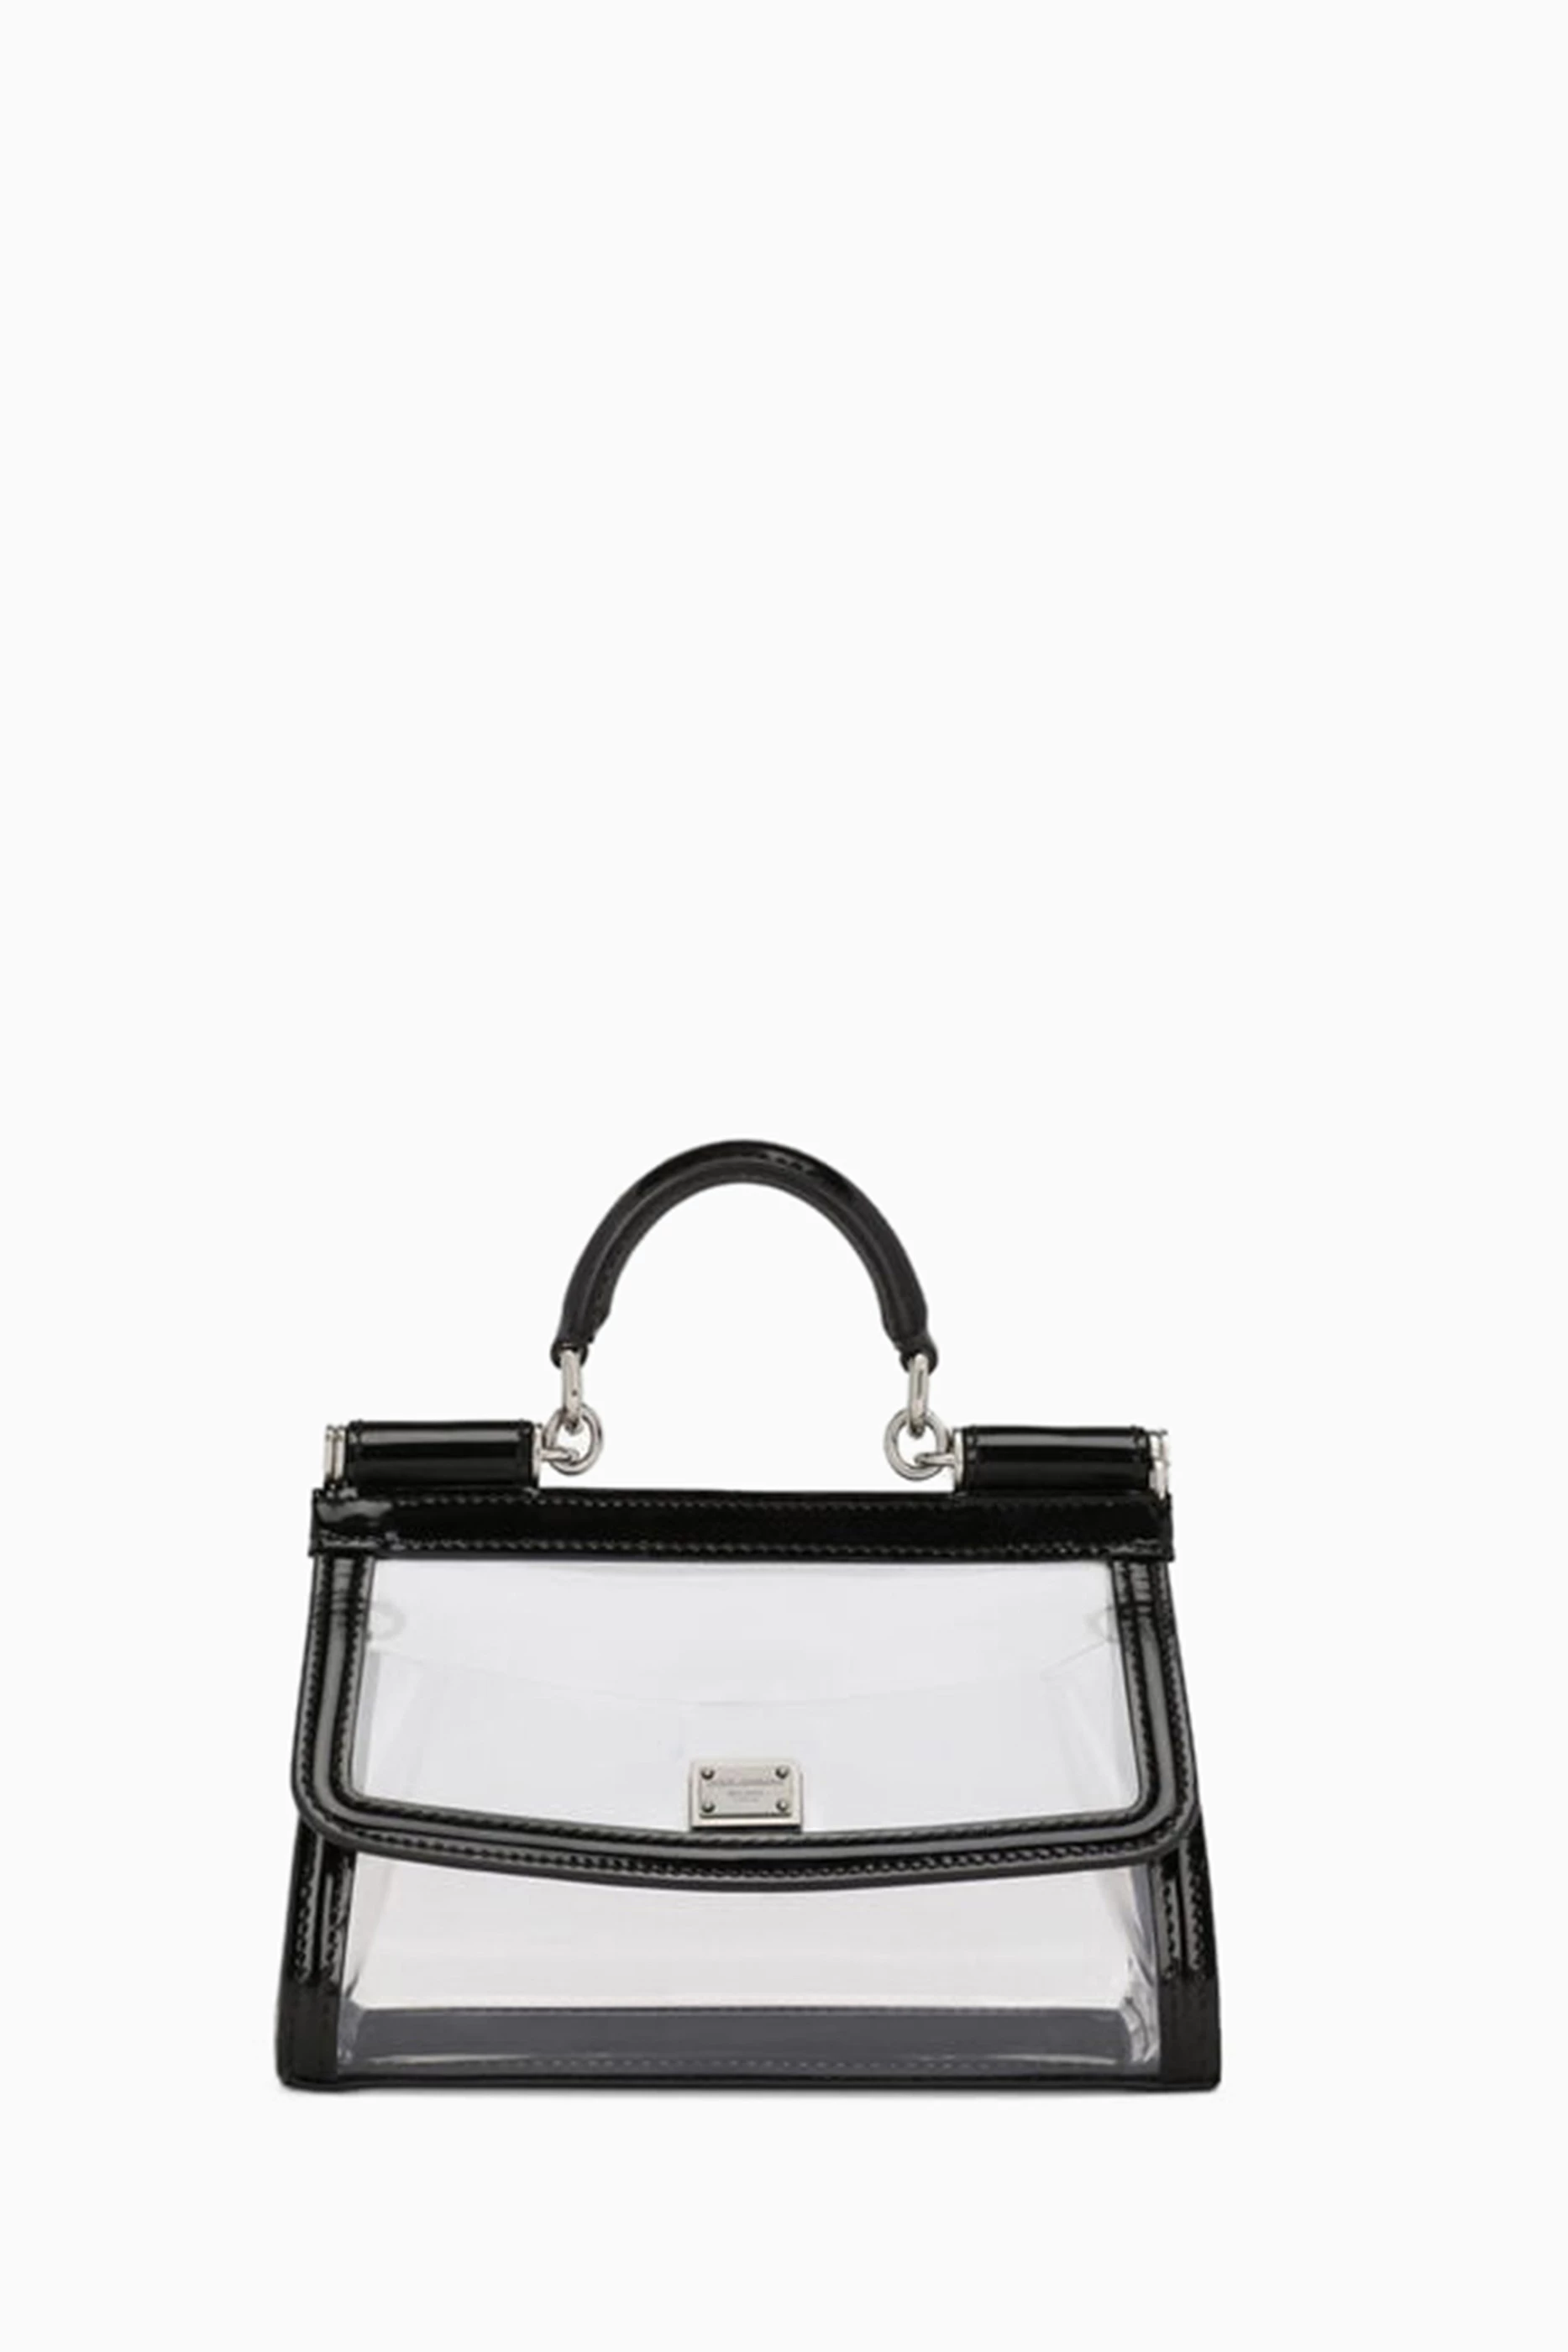 Sicily handbag Dolce & Gabbana Black in Plastic - 30651731